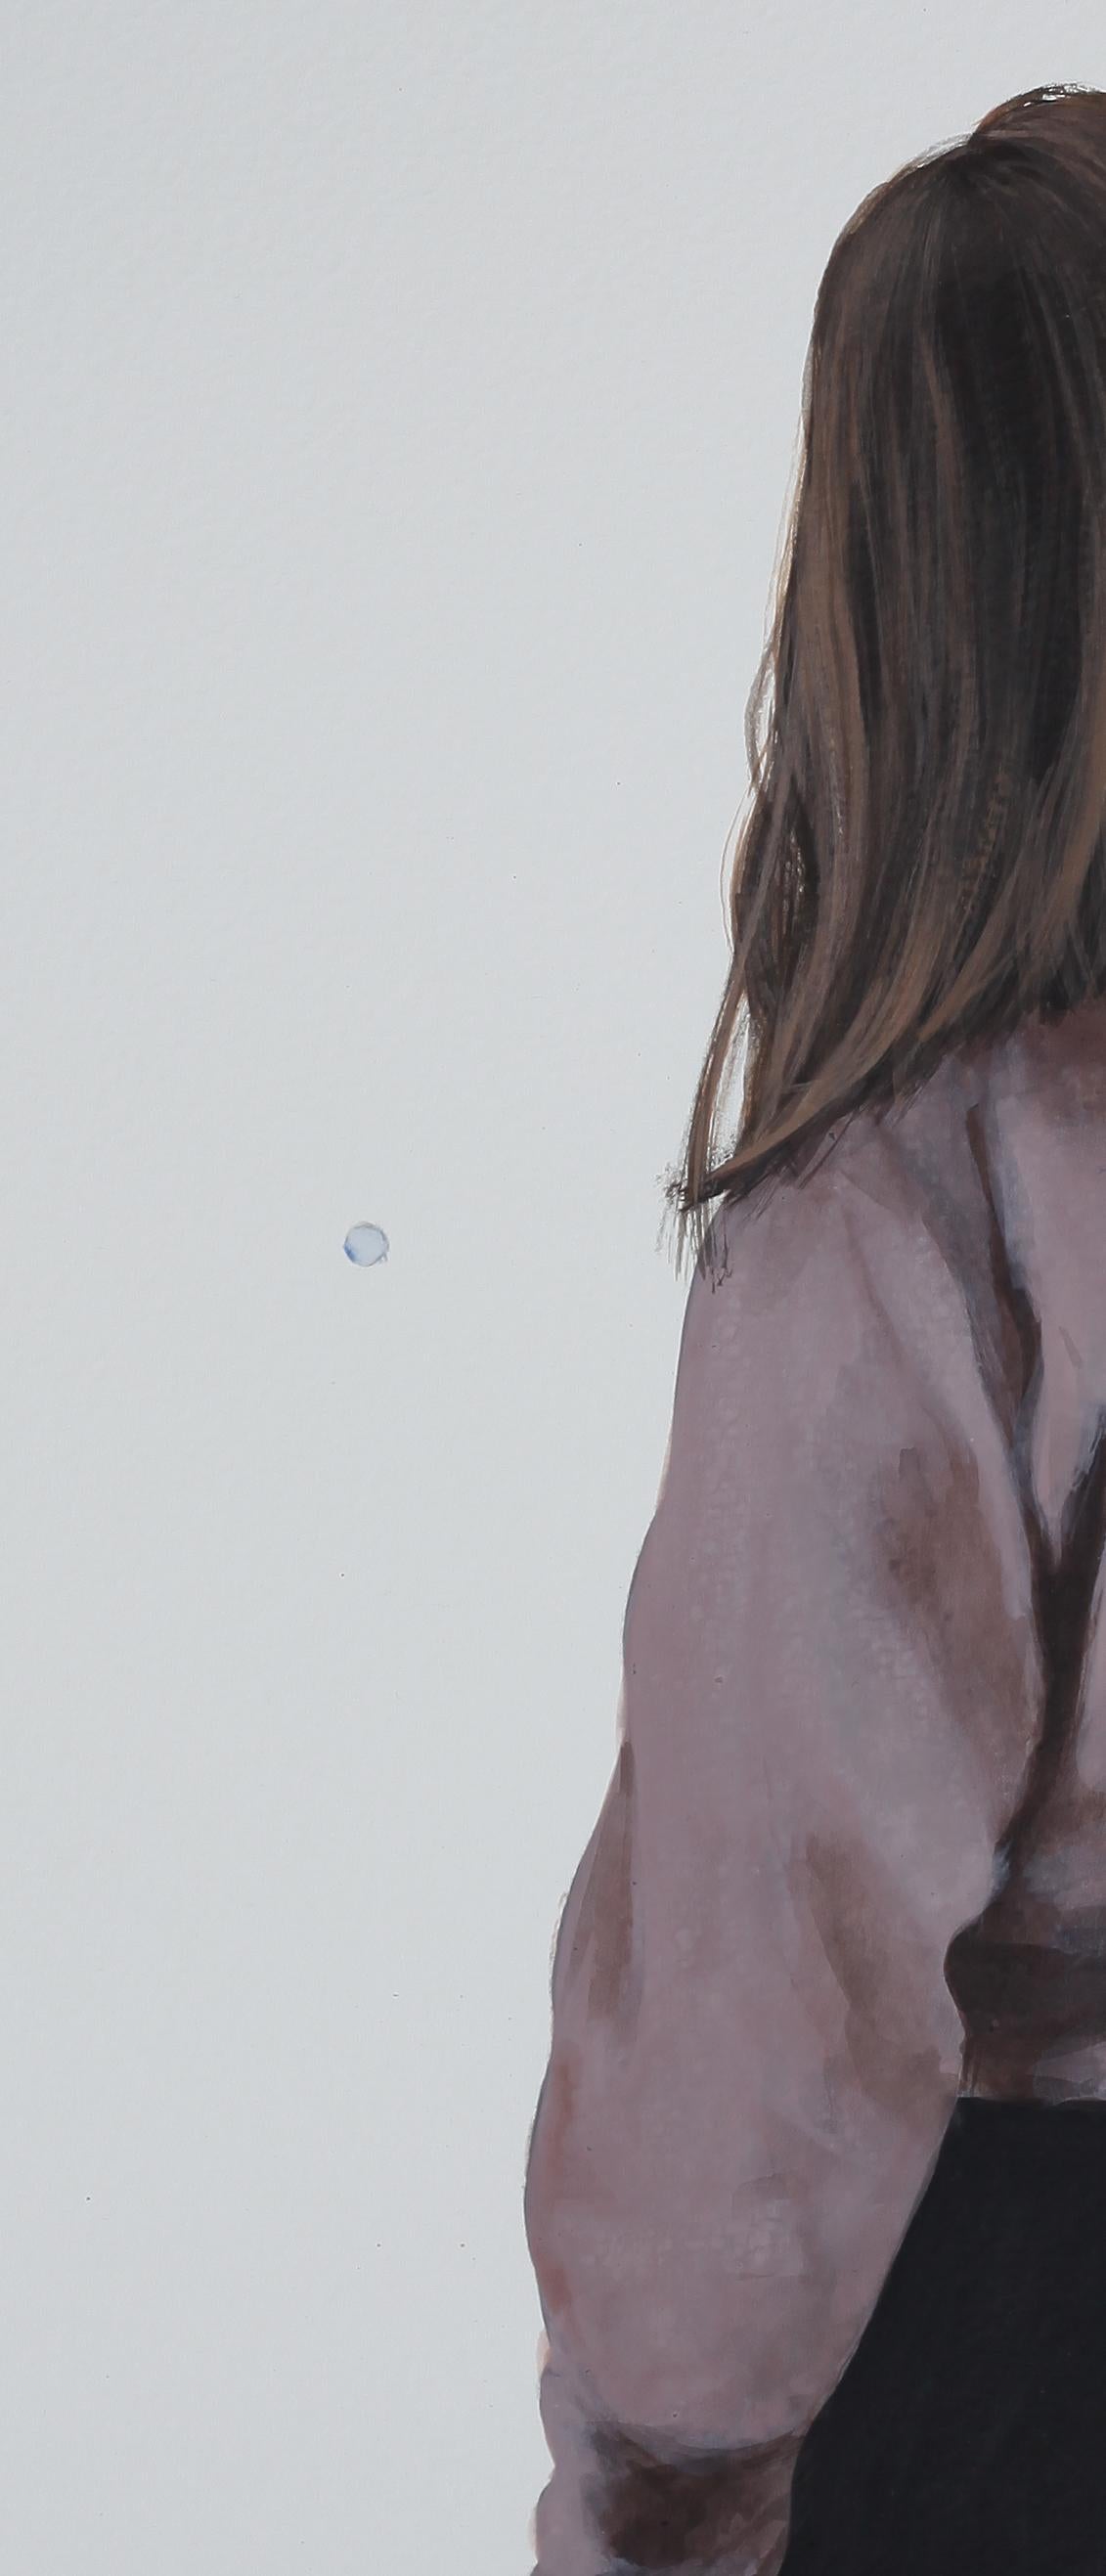 « Soap Bubble VII » - Peinture contemporaine d'un portrait d'une fille avec une chemise rose - Contemporain Painting par Karoline Kroiss